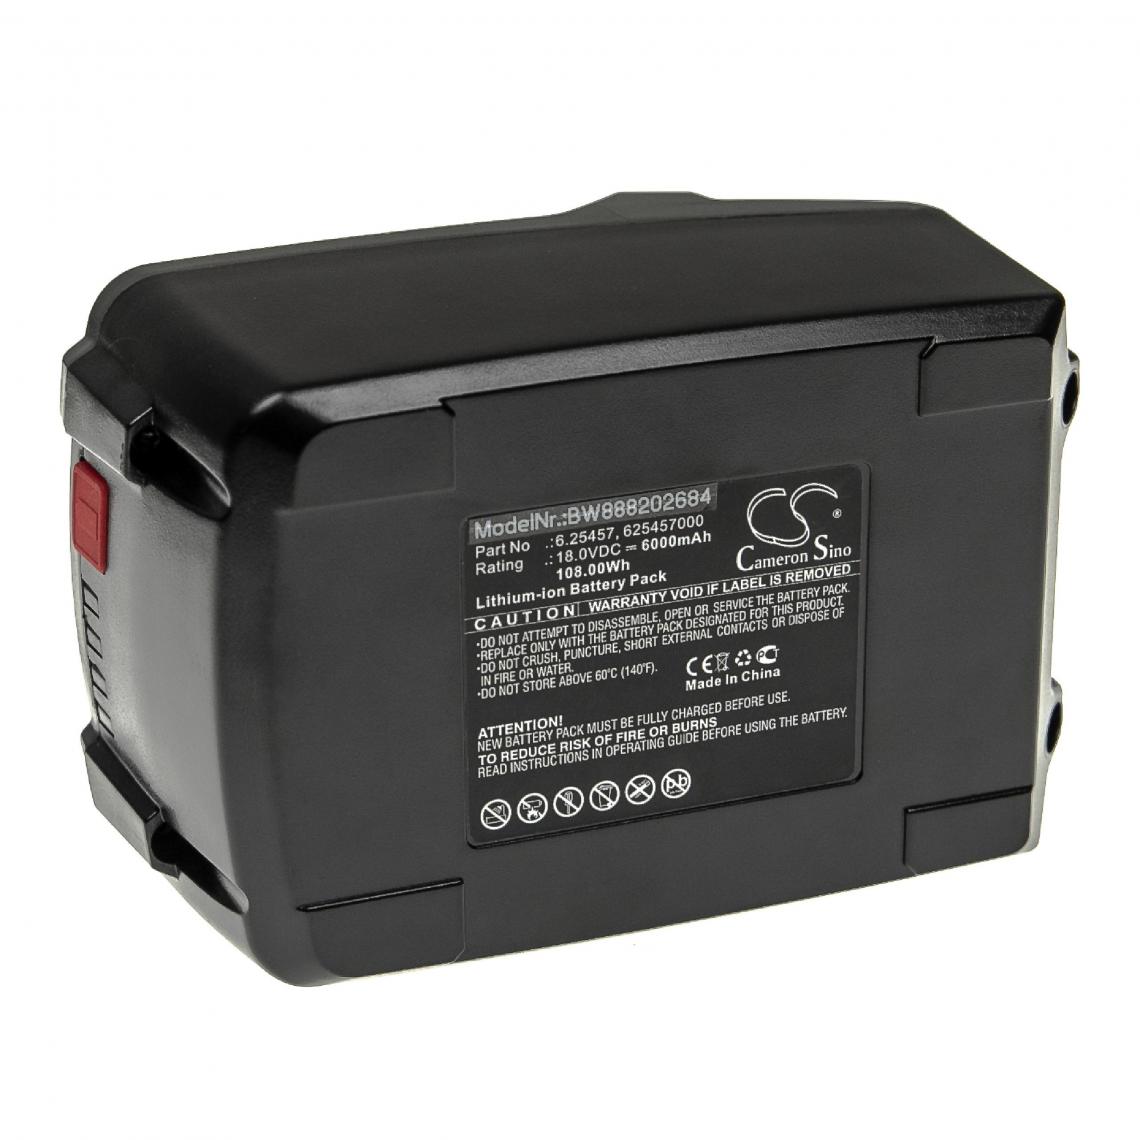 Vhbw - vhbw Batterie compatible avec Metabo SSD 18 LTX, SSD 18 LTX 200 BL, SSE 18 LTX Compact, SSW 18 outil électrique (6000mAh Li-ion 18 V) - Autre appareil de mesure